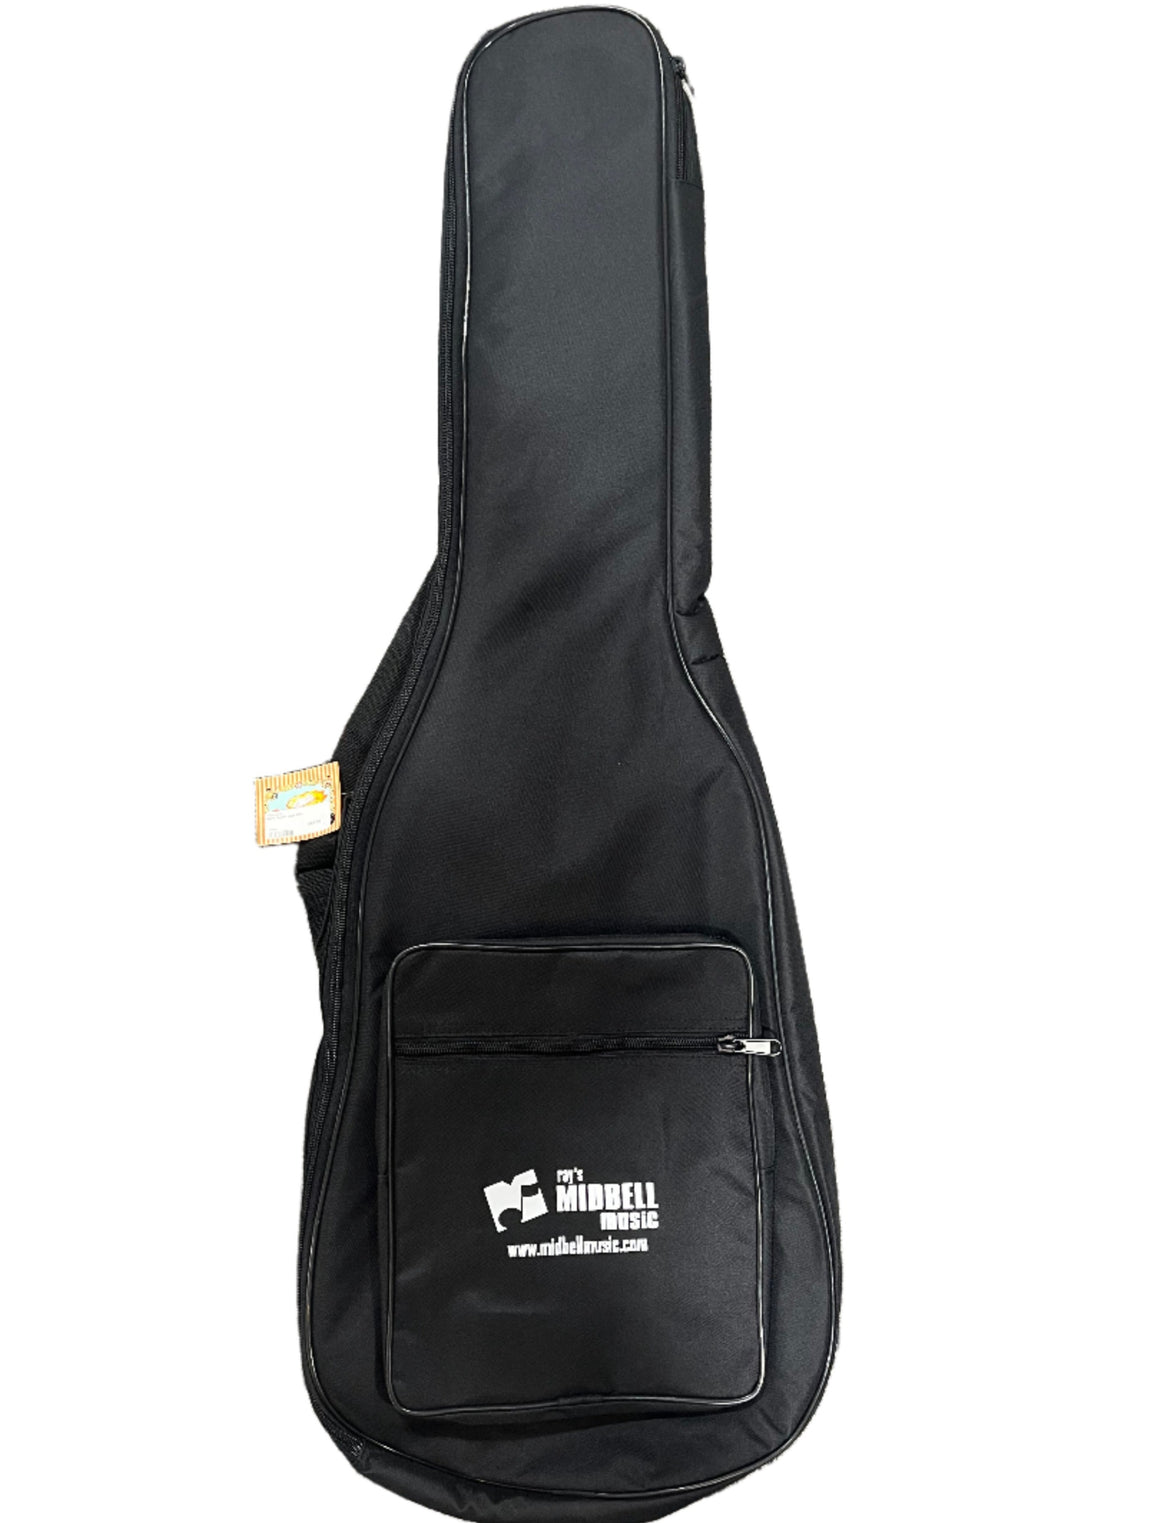 Henry Heller HGBB1 Bass Guitar Logo Bag